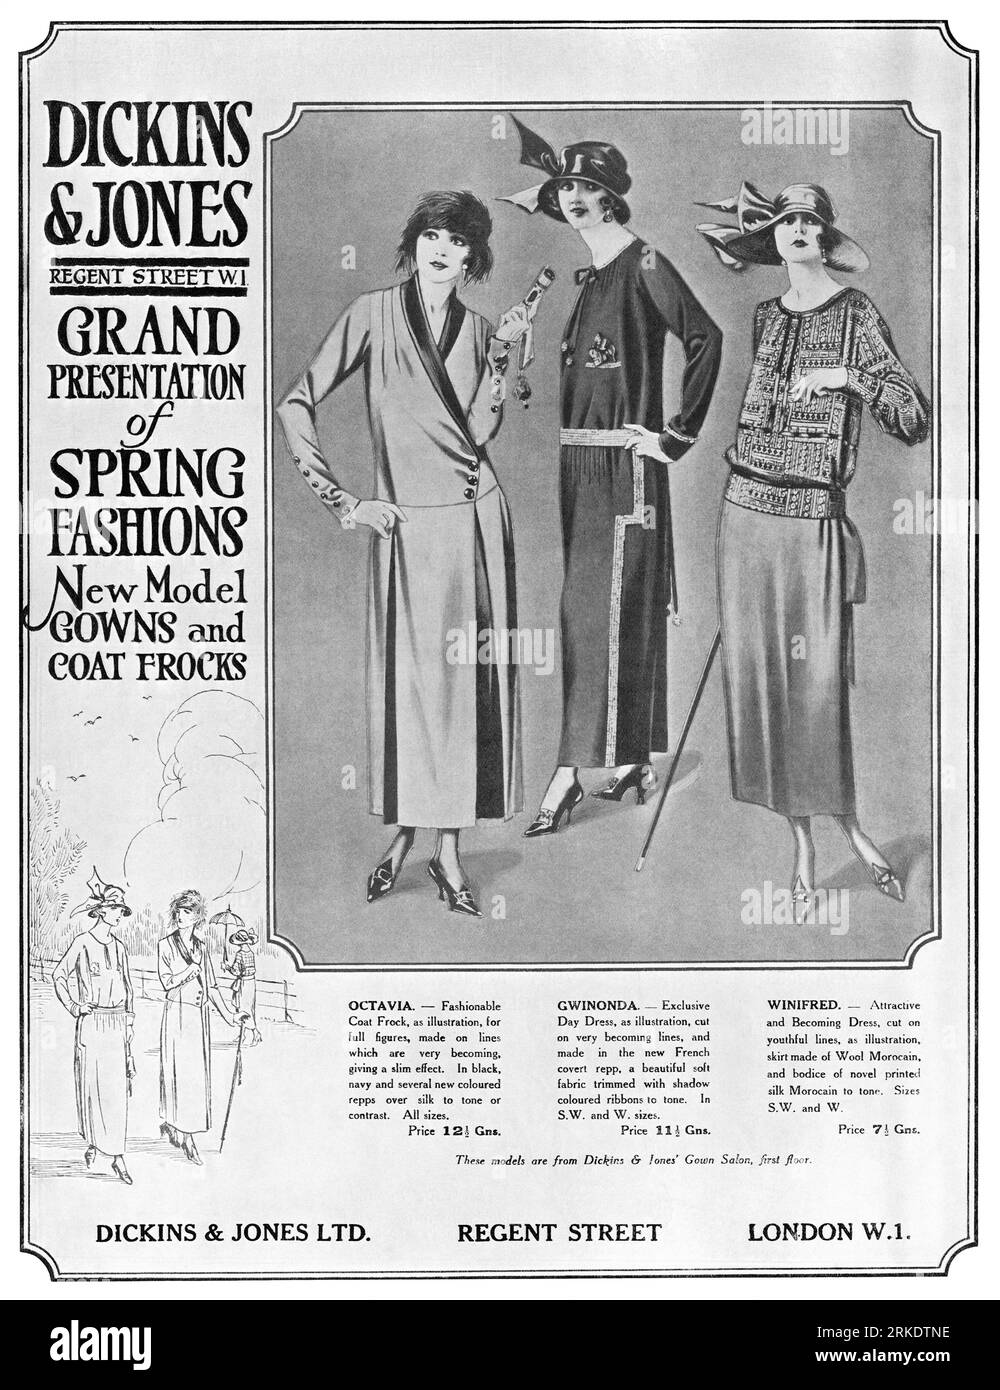 1923 pubblicità britannica per abiti e camici di moda primaverile femminili presso i grandi magazzini Dickins and Jones. Foto Stock